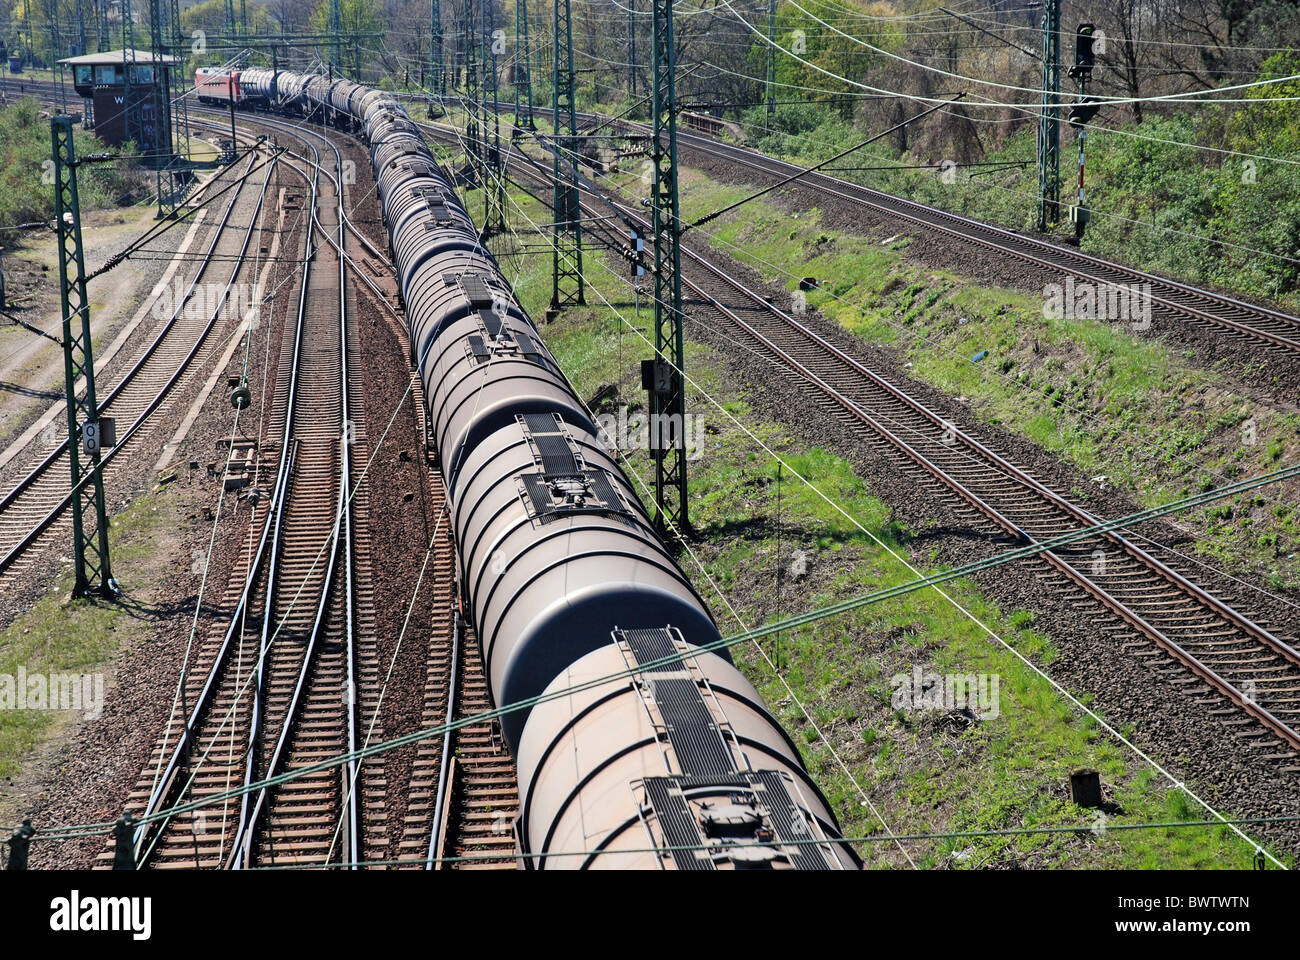 Ferrocarril de carga ferroviaria Deutsche Bahn AG Alemania Europa Europa en movimiento energía eléctrica viaje locomoción Foto de stock